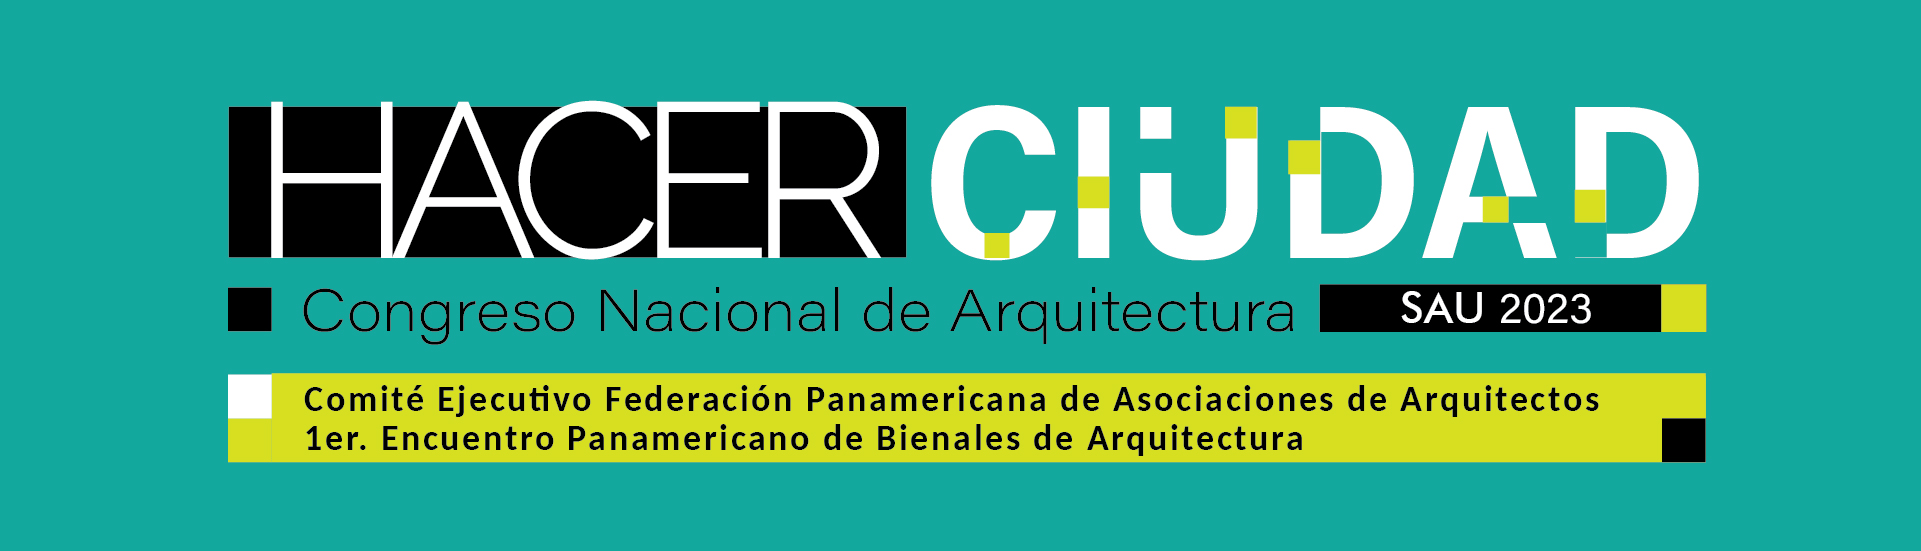 Hacer Ciudad - Congreso Nacional de Arquitectura SAU 2023